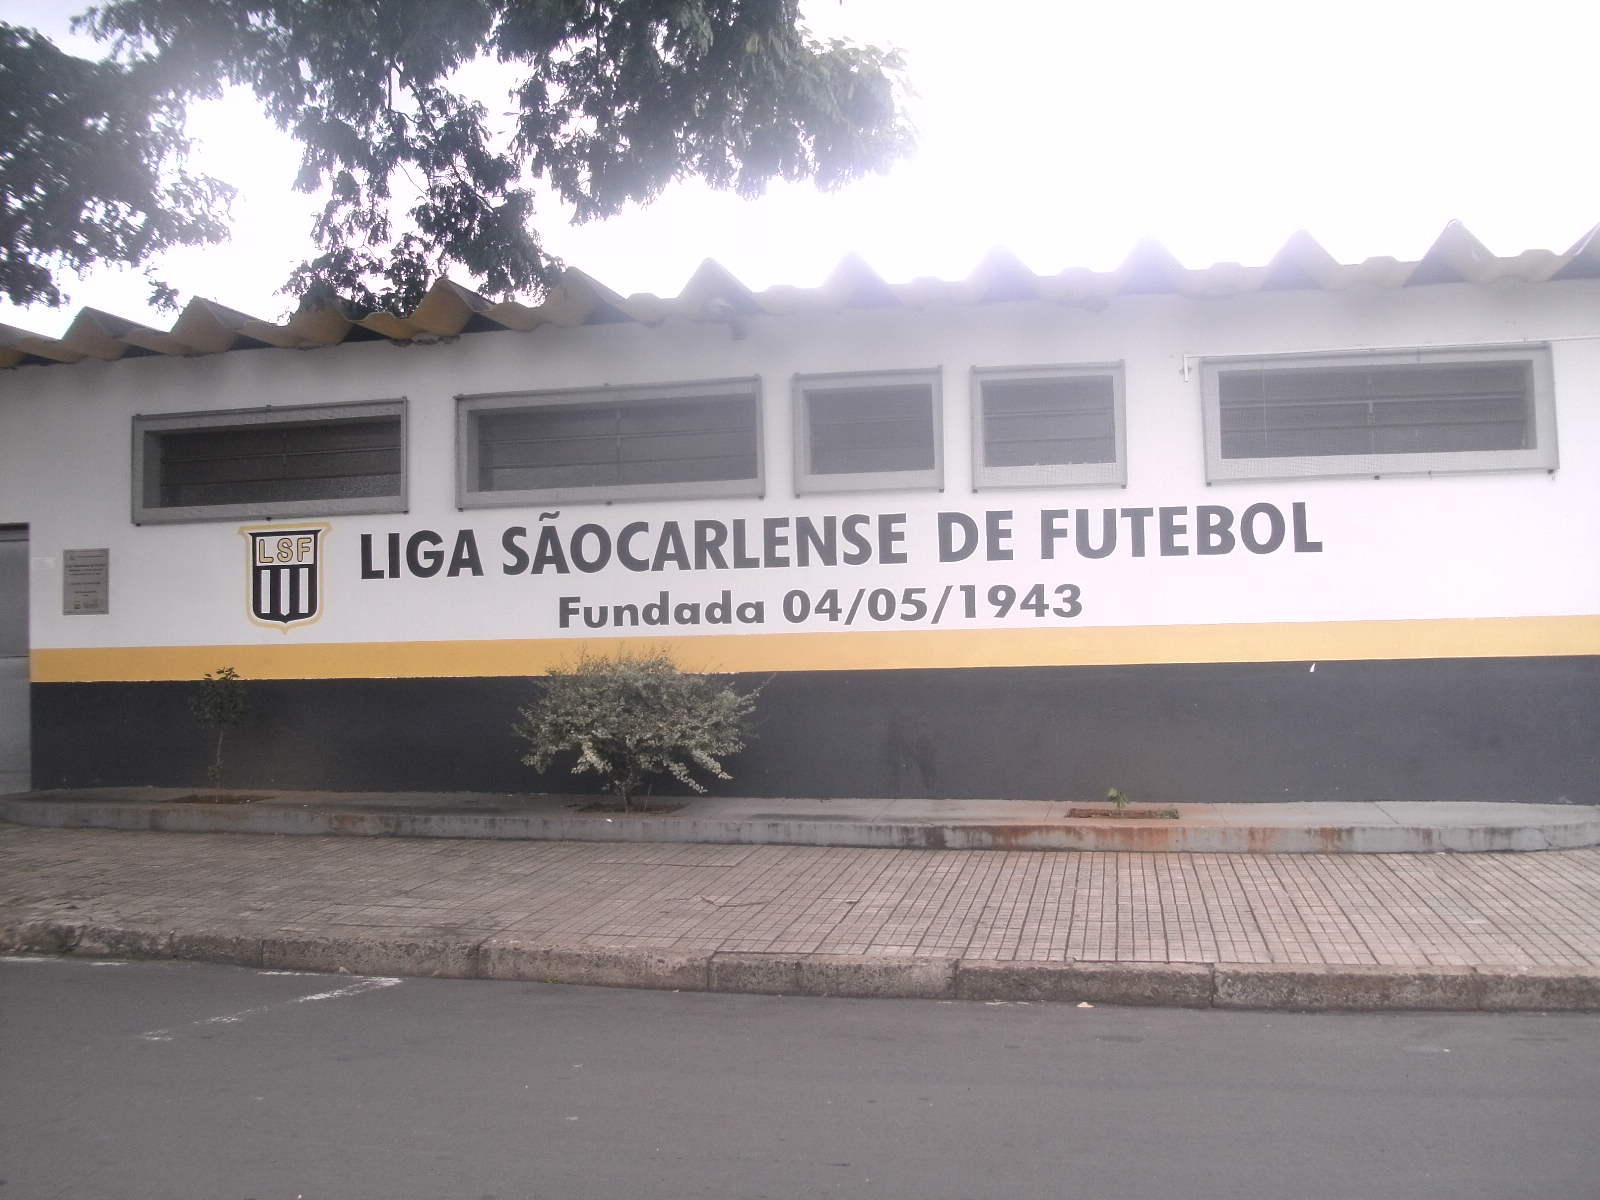 São Carlos Clube - Wikipedia